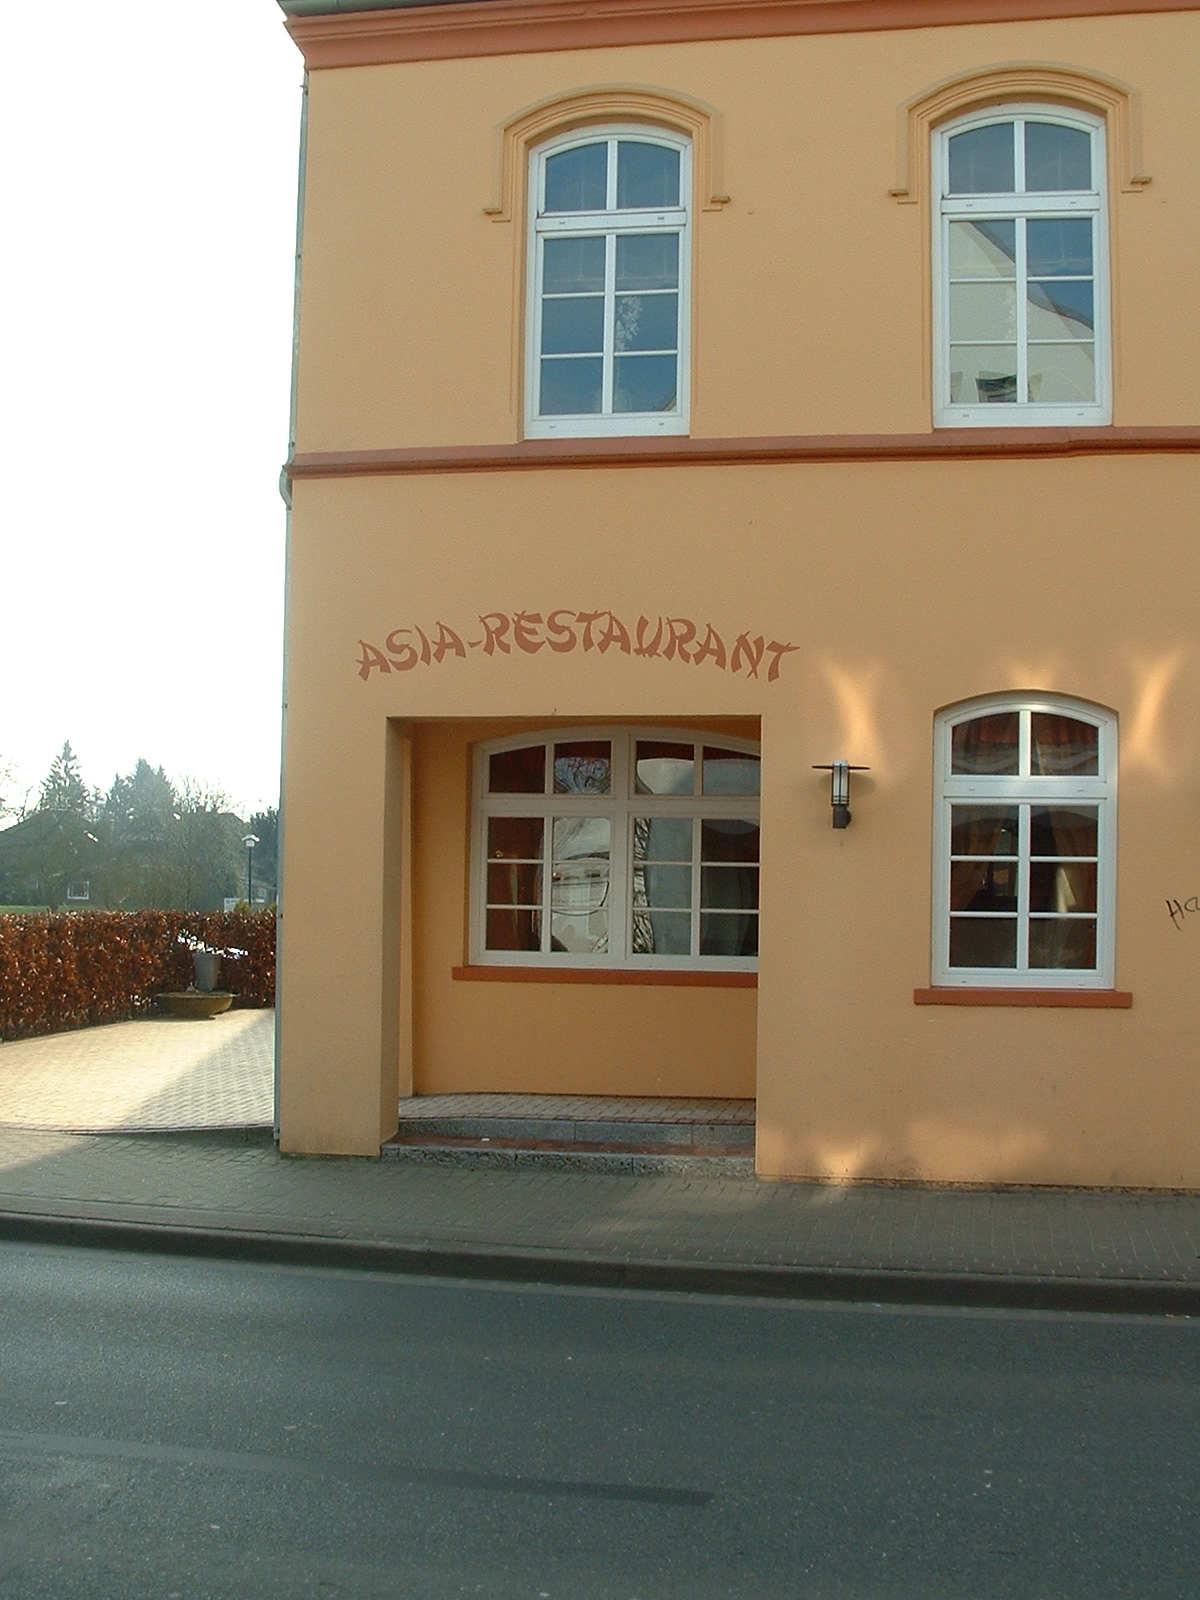 Asia Restaurant Hannoverscher Hof in Wildeshausen